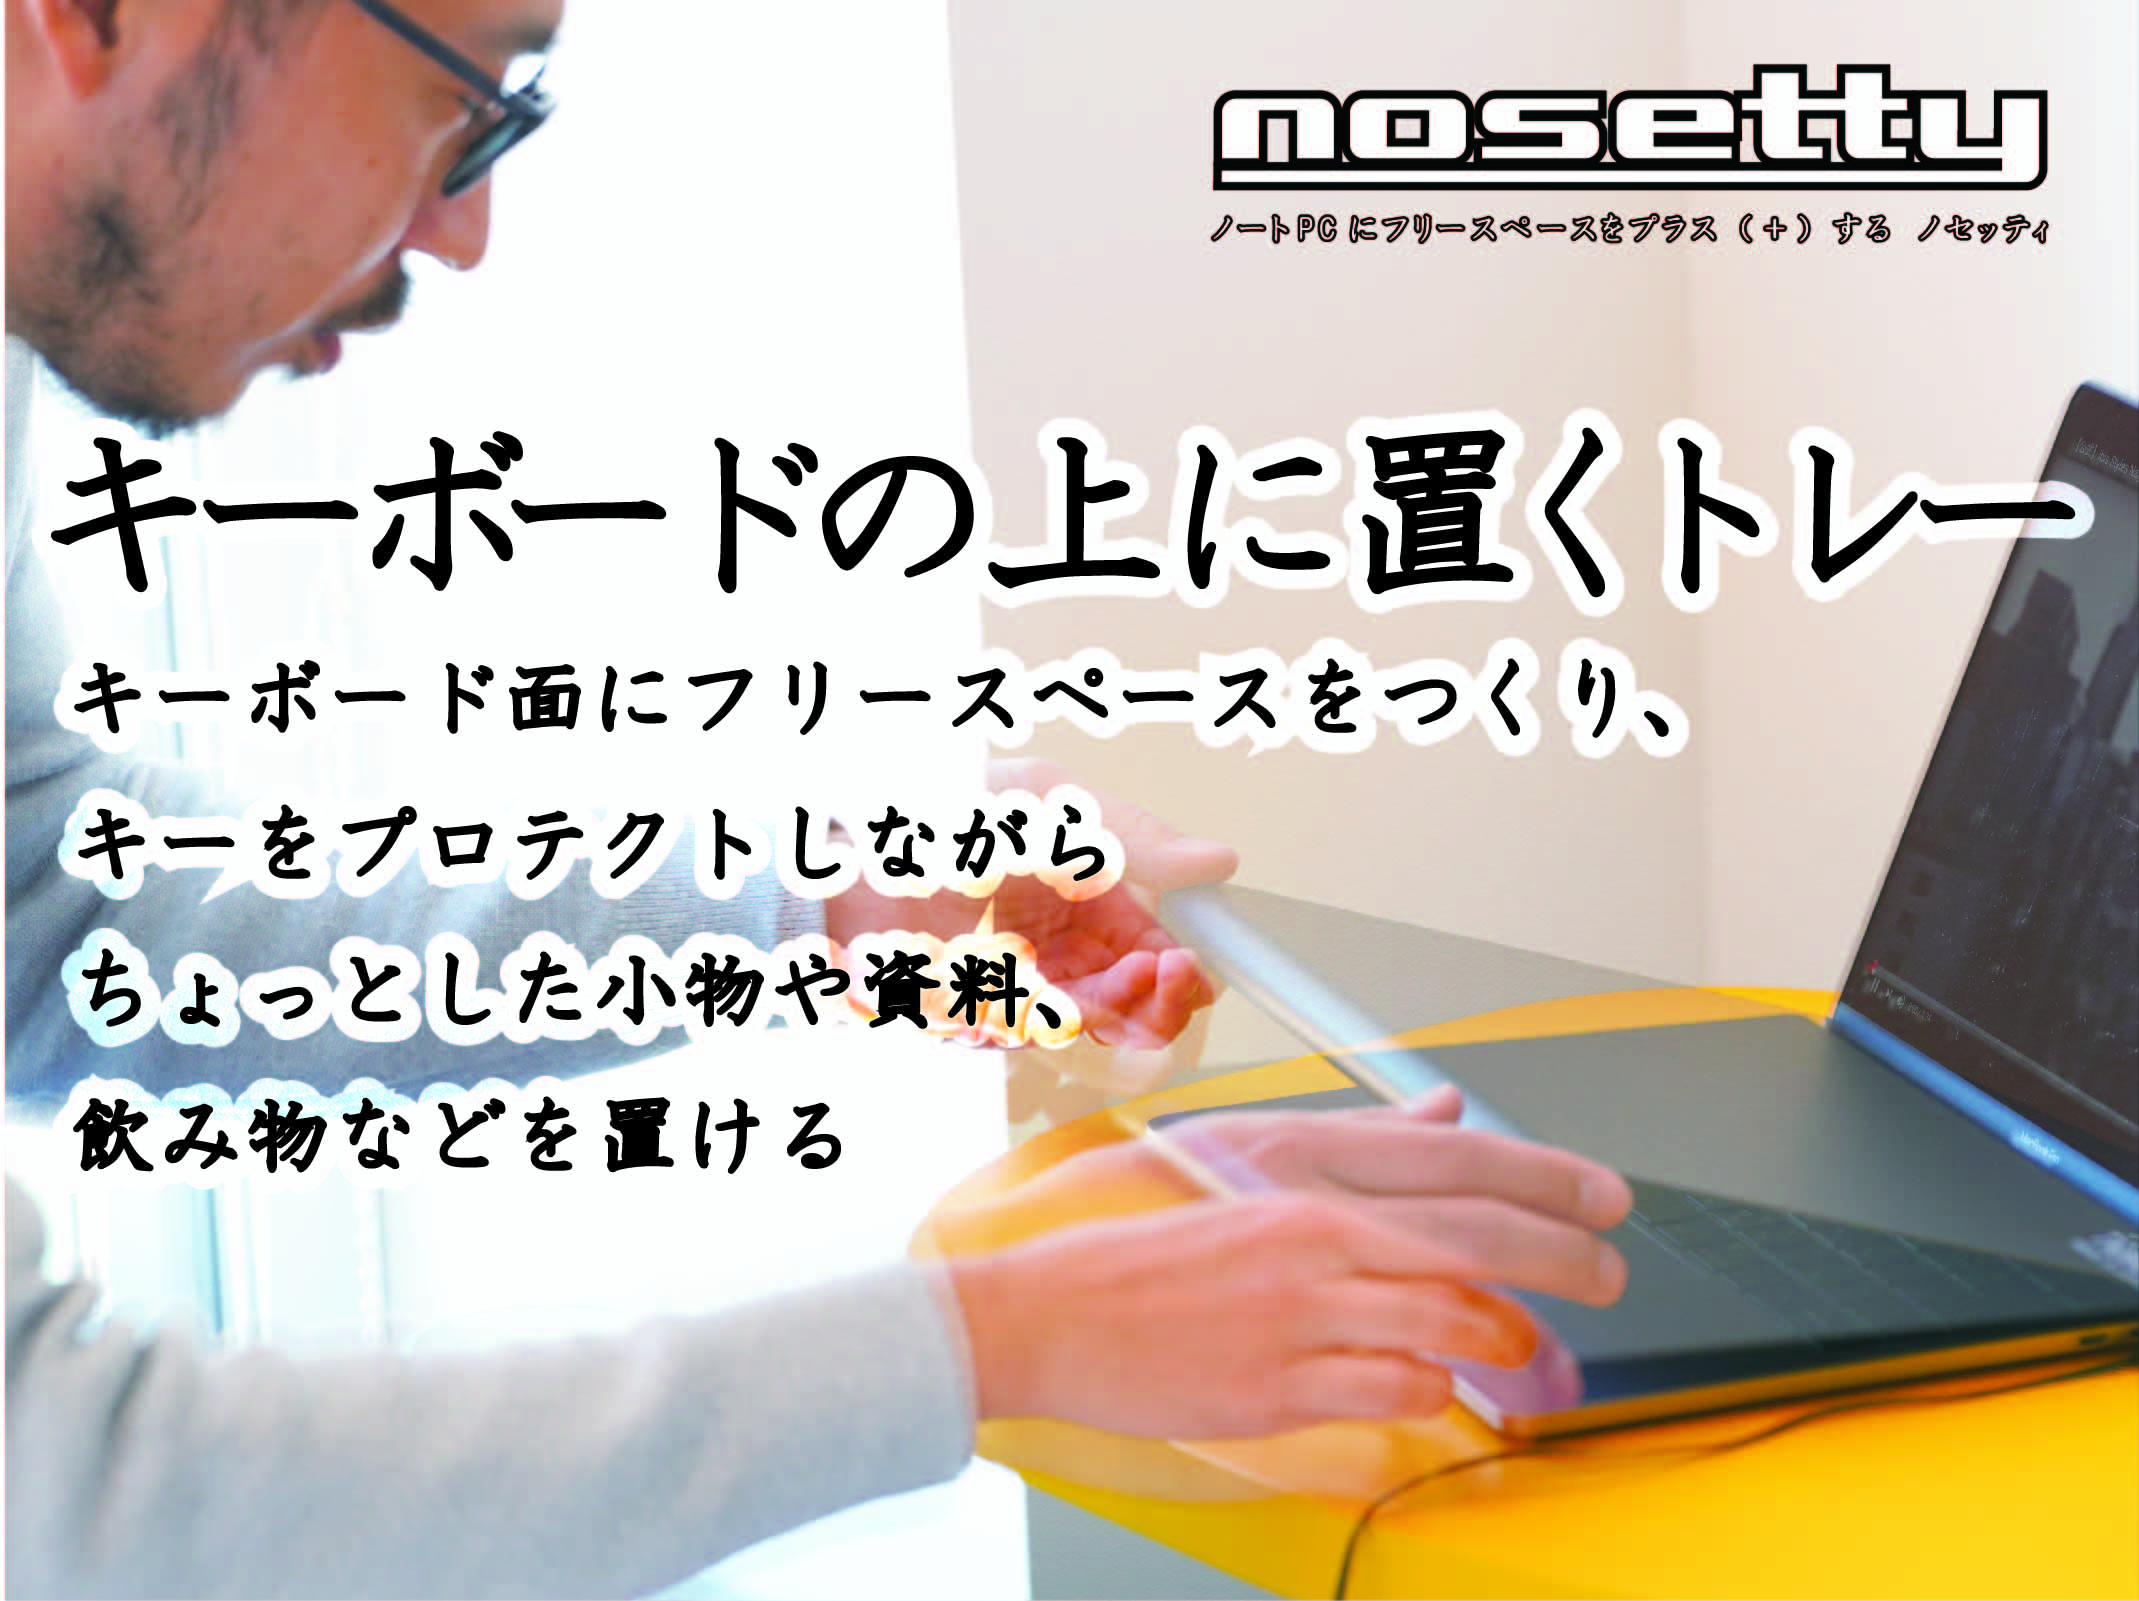 ちょっとした小物や飲み物を載せられる ノートpcのキーボード上に置くトレー Nosetty ノセッティ Engadget 日本版